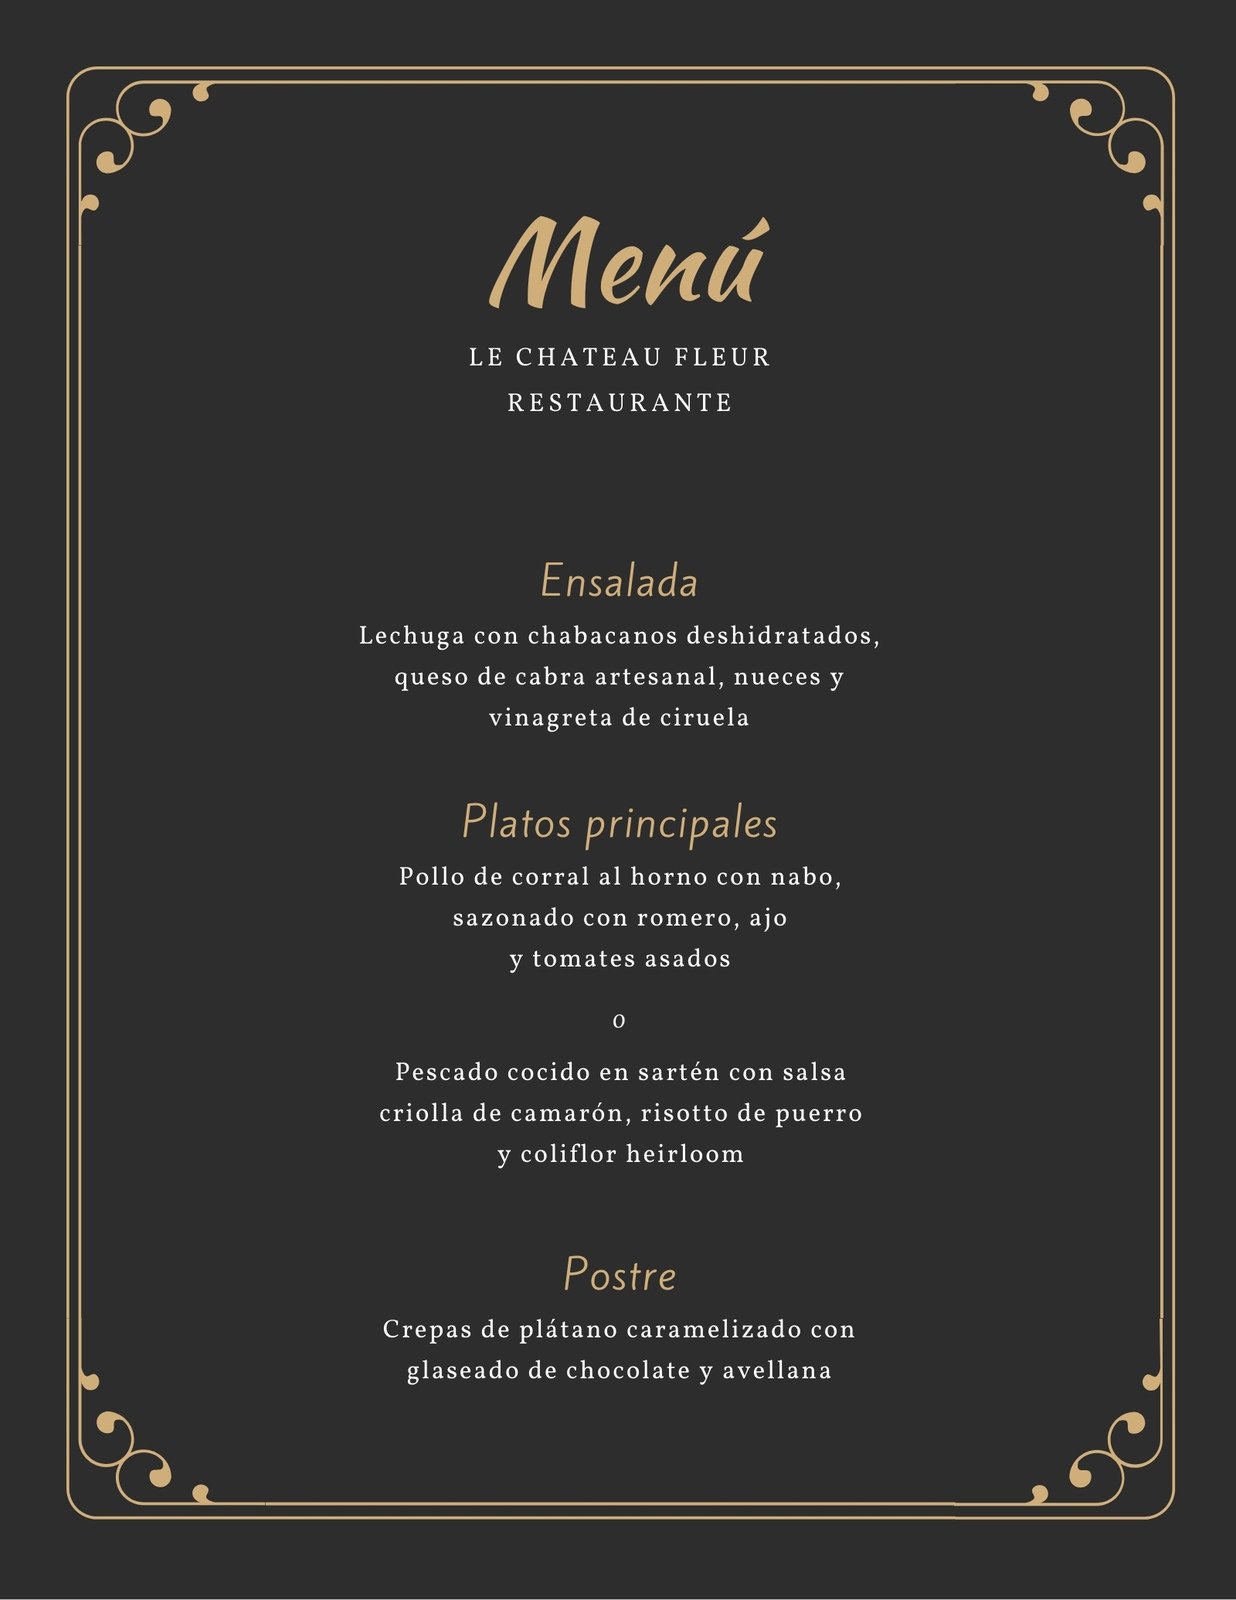 Menus Elegantes De Restaurantes Plantillas para menús editables y gratuitas | Canva